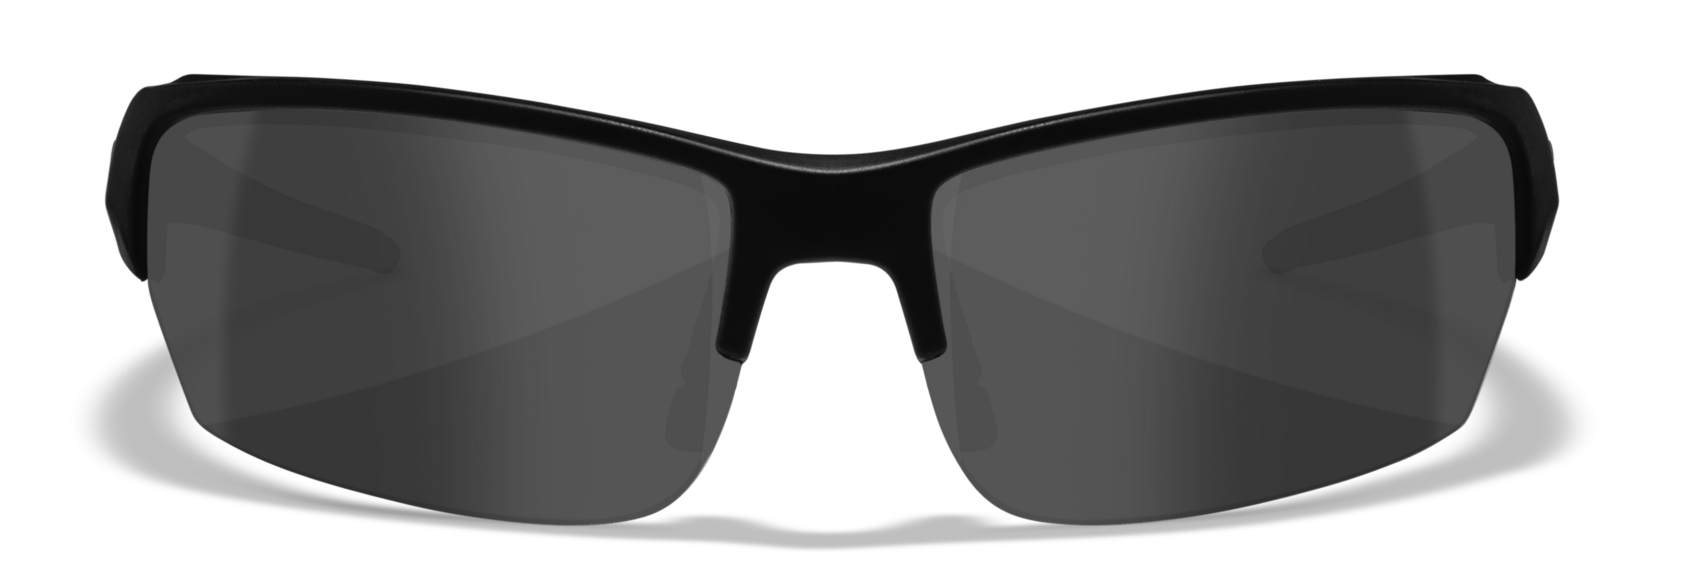 Wiley X WX Saint - Alternative Fit Matte Black Sunglasses